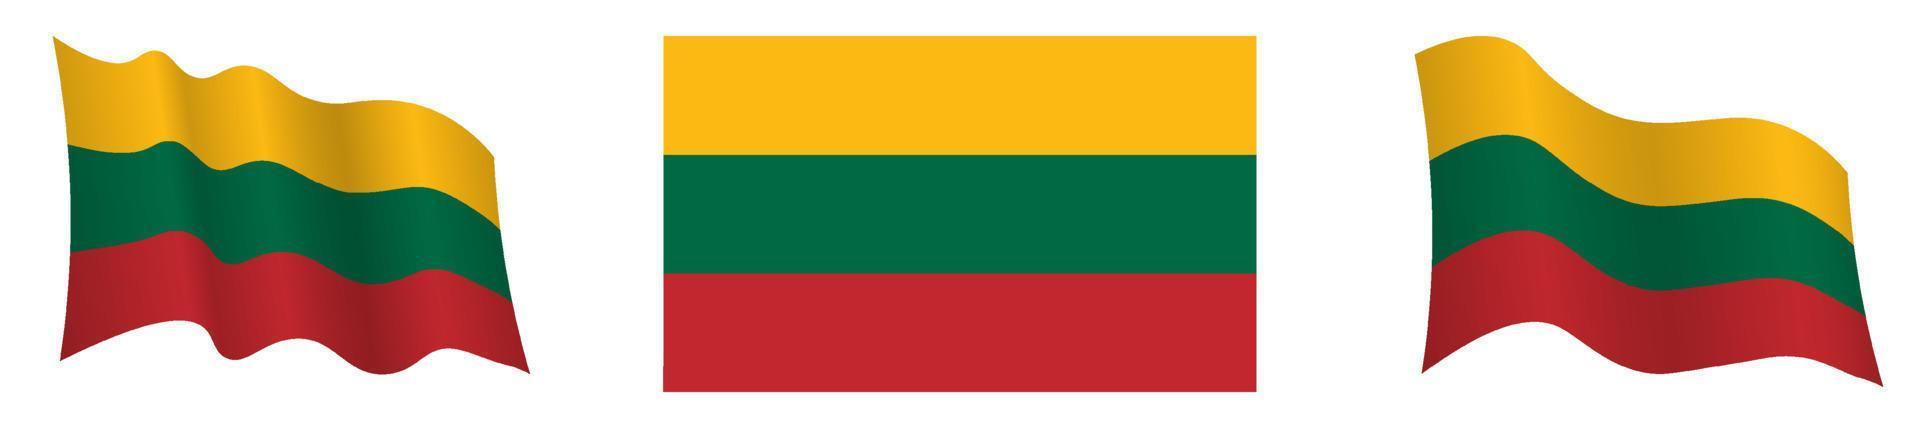 drapeau de la lituanie en position statique et en mouvement, se développant au vent dans des couleurs et des tailles exactes, sur fond blanc vecteur